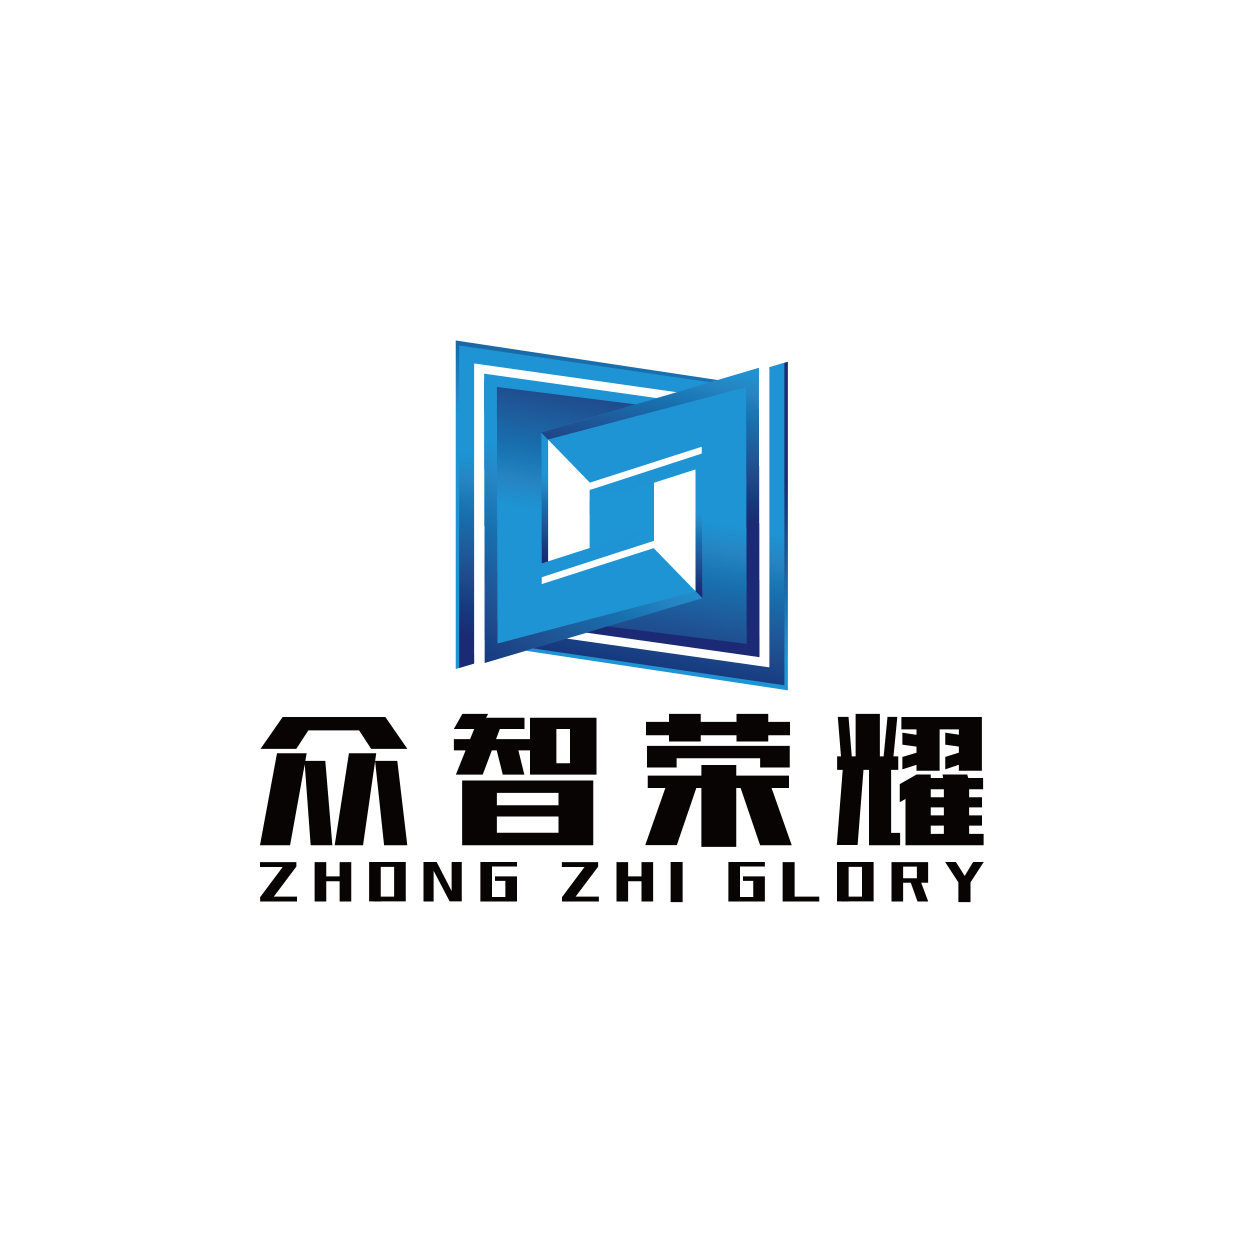 沈阳众智荣耀文化传媒有限公司logo